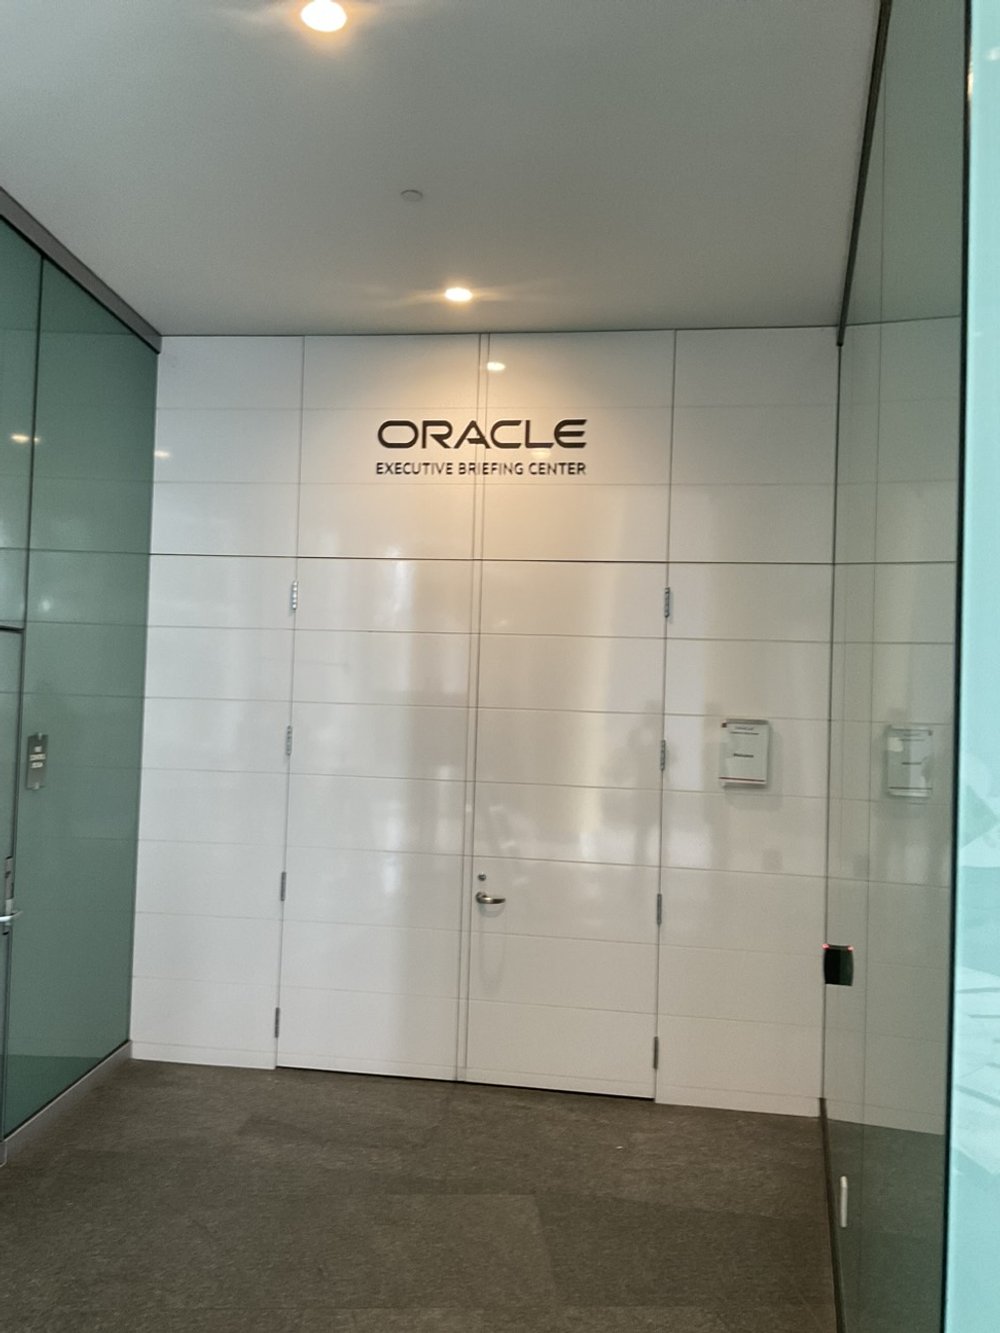 Oracle Executive Breifing Center 4.jpg